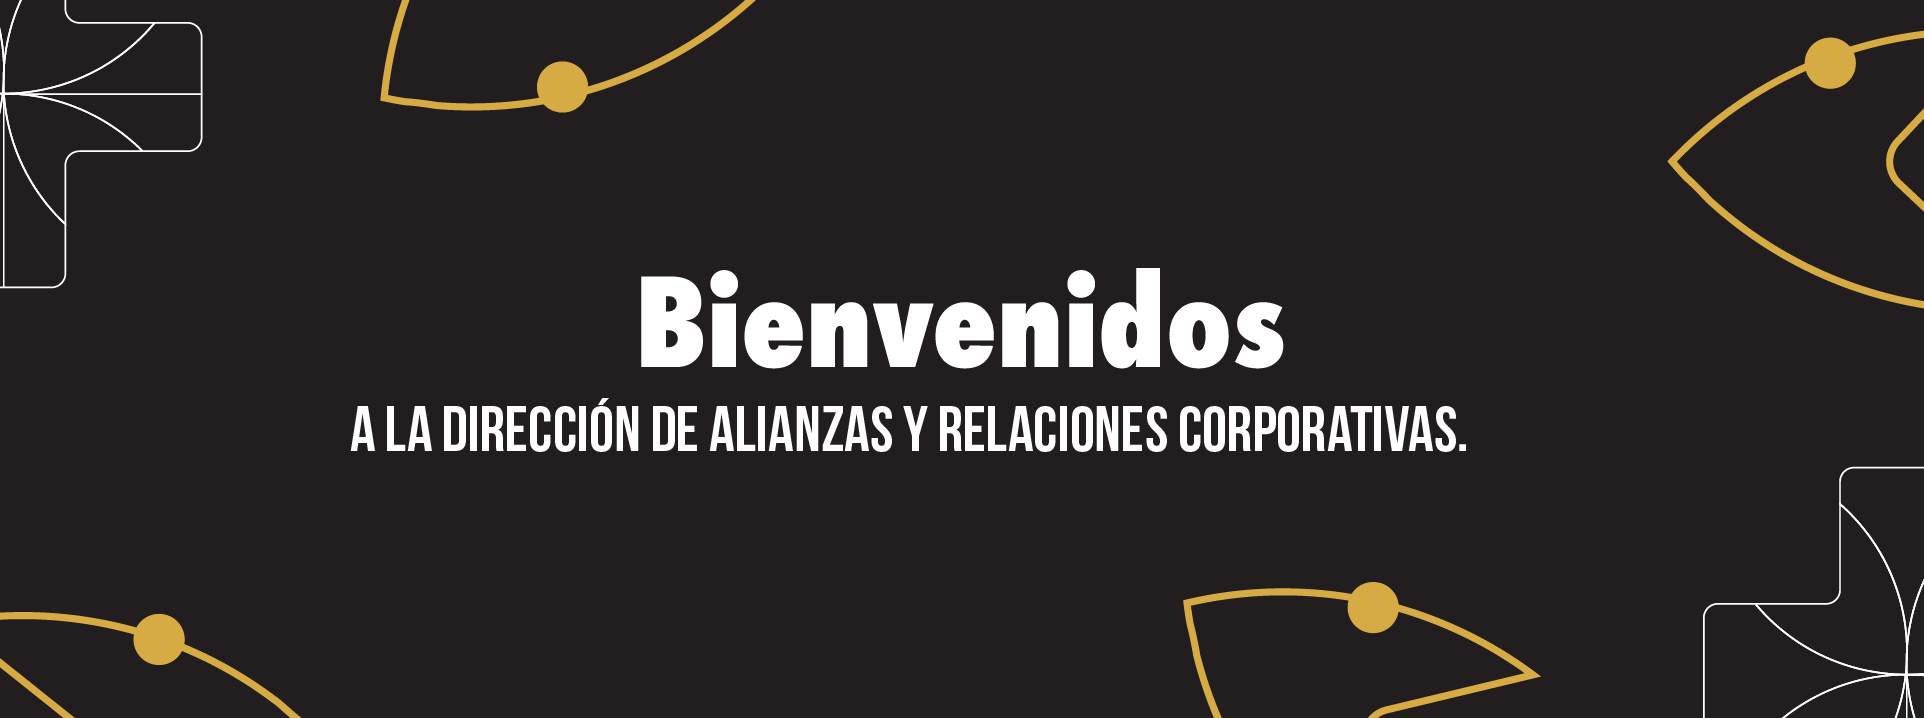 Banner dirección de alianzas y relaciones corporativas